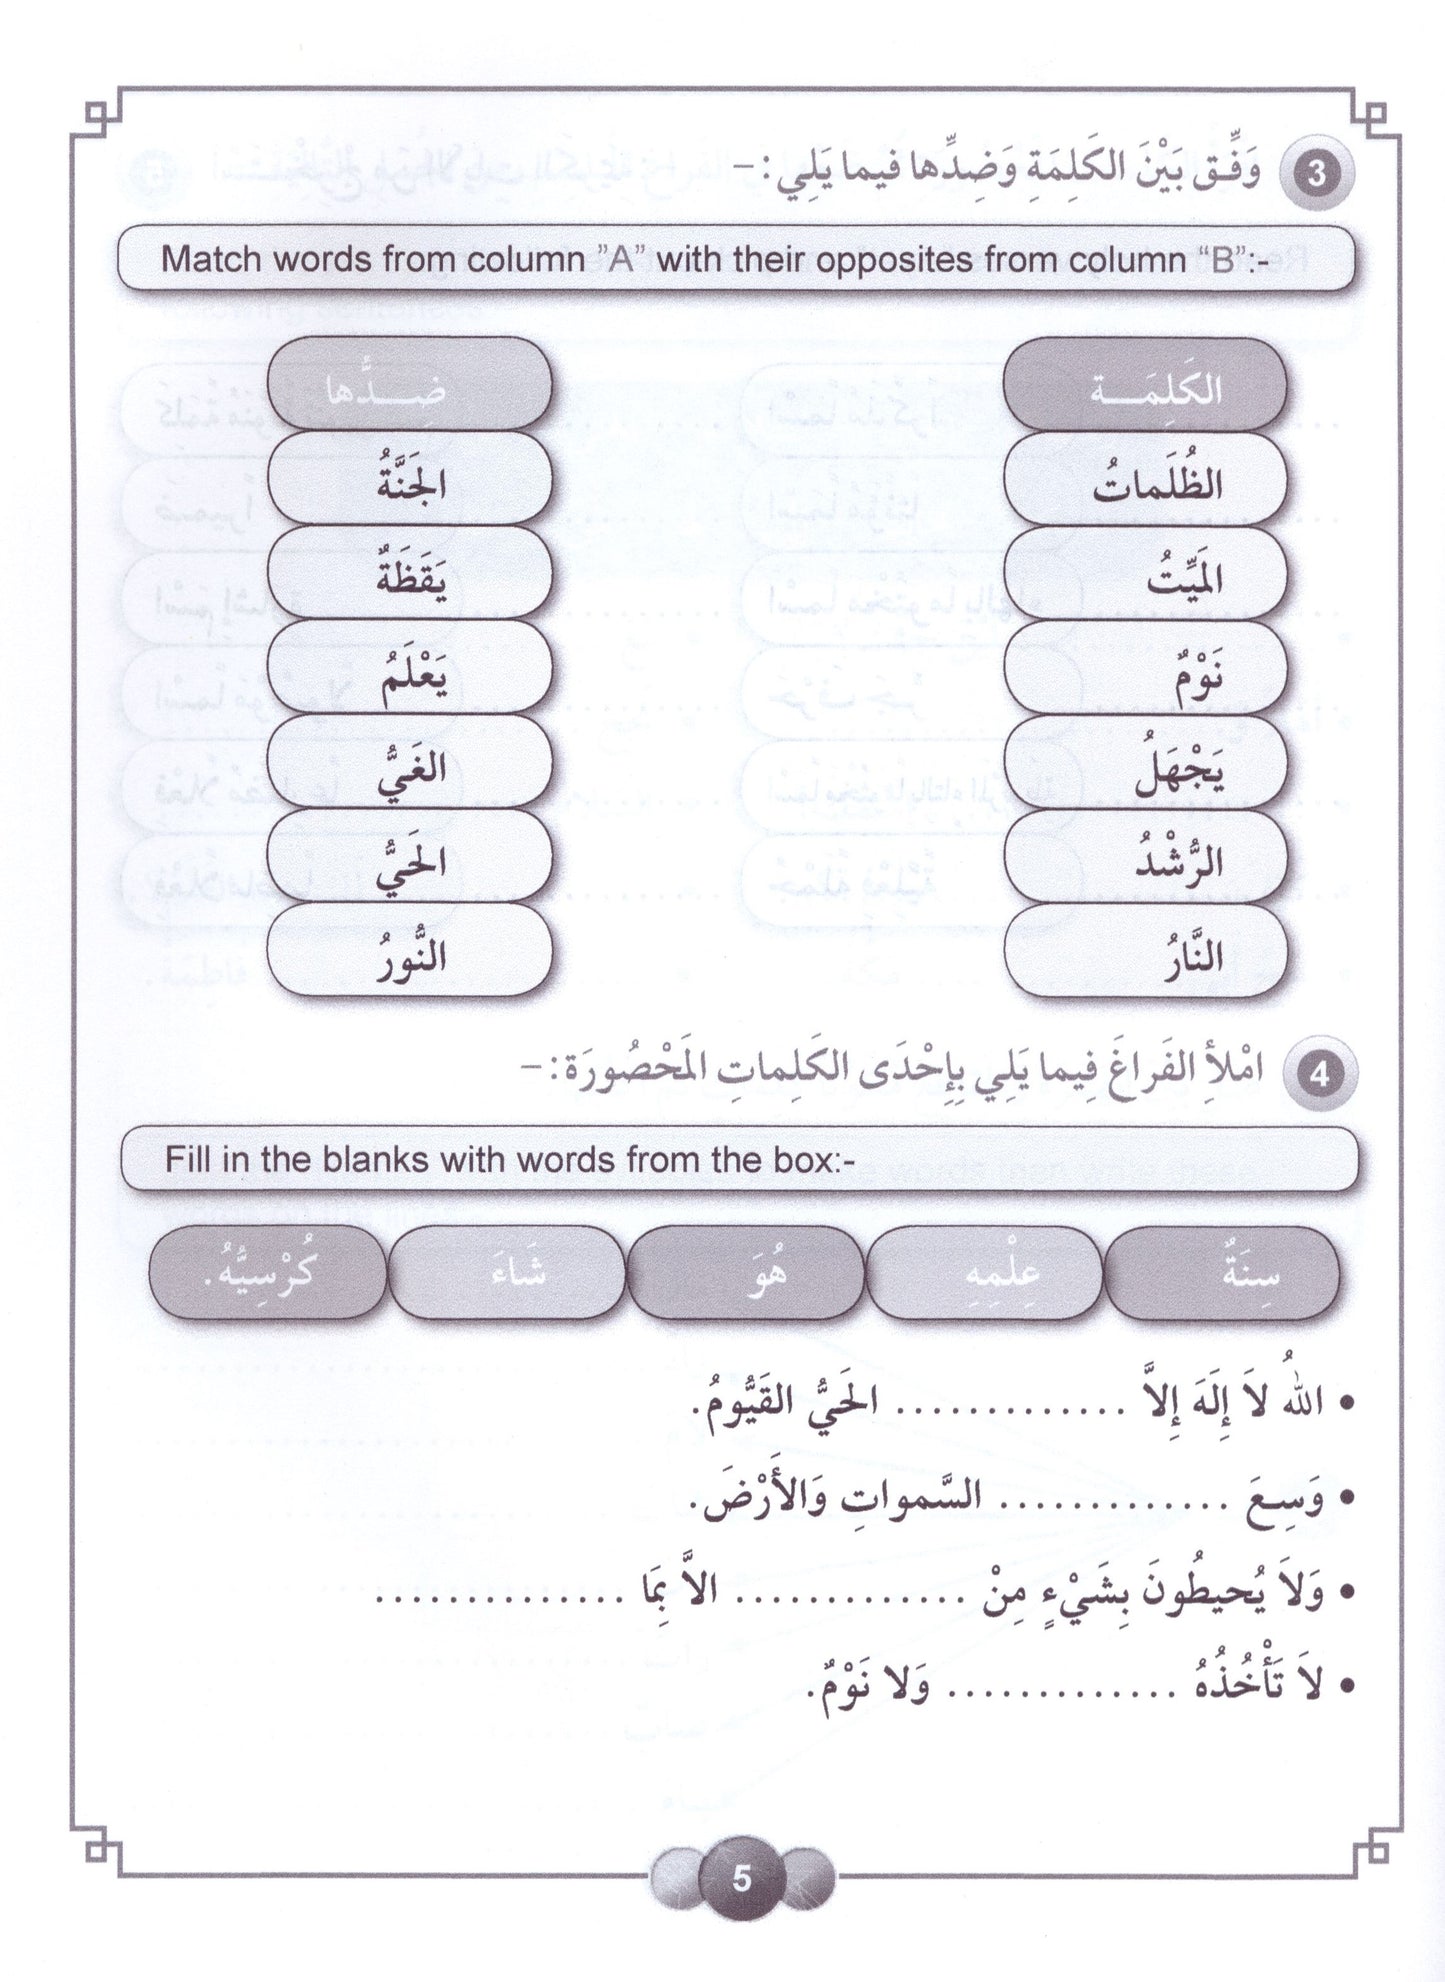 Al Aafaq Workbook - Grade/Level 6